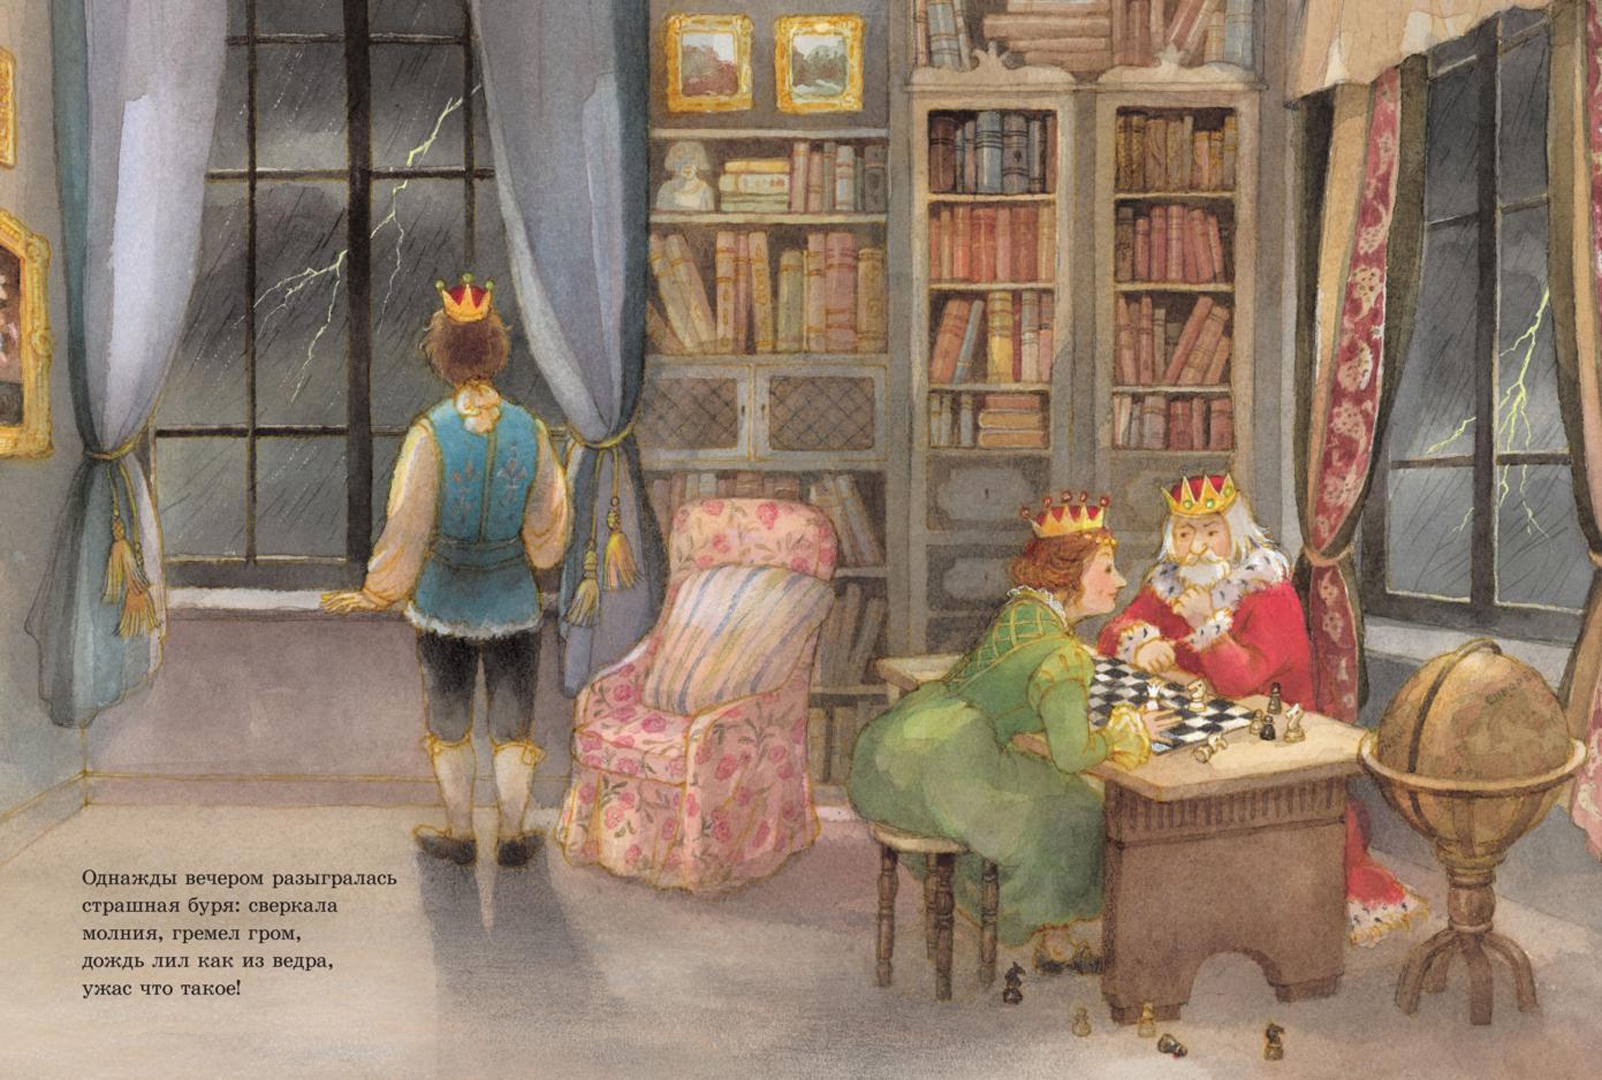 Принцессы андерсена. Иллюстрации к сказке Андерсена принцесса на горошине. Сказки Андерсена принцесса на горошине. Принцесса на горошине иллюстрации Майи Дузиковой. Андерсен х.к. "принцесса на горошине".